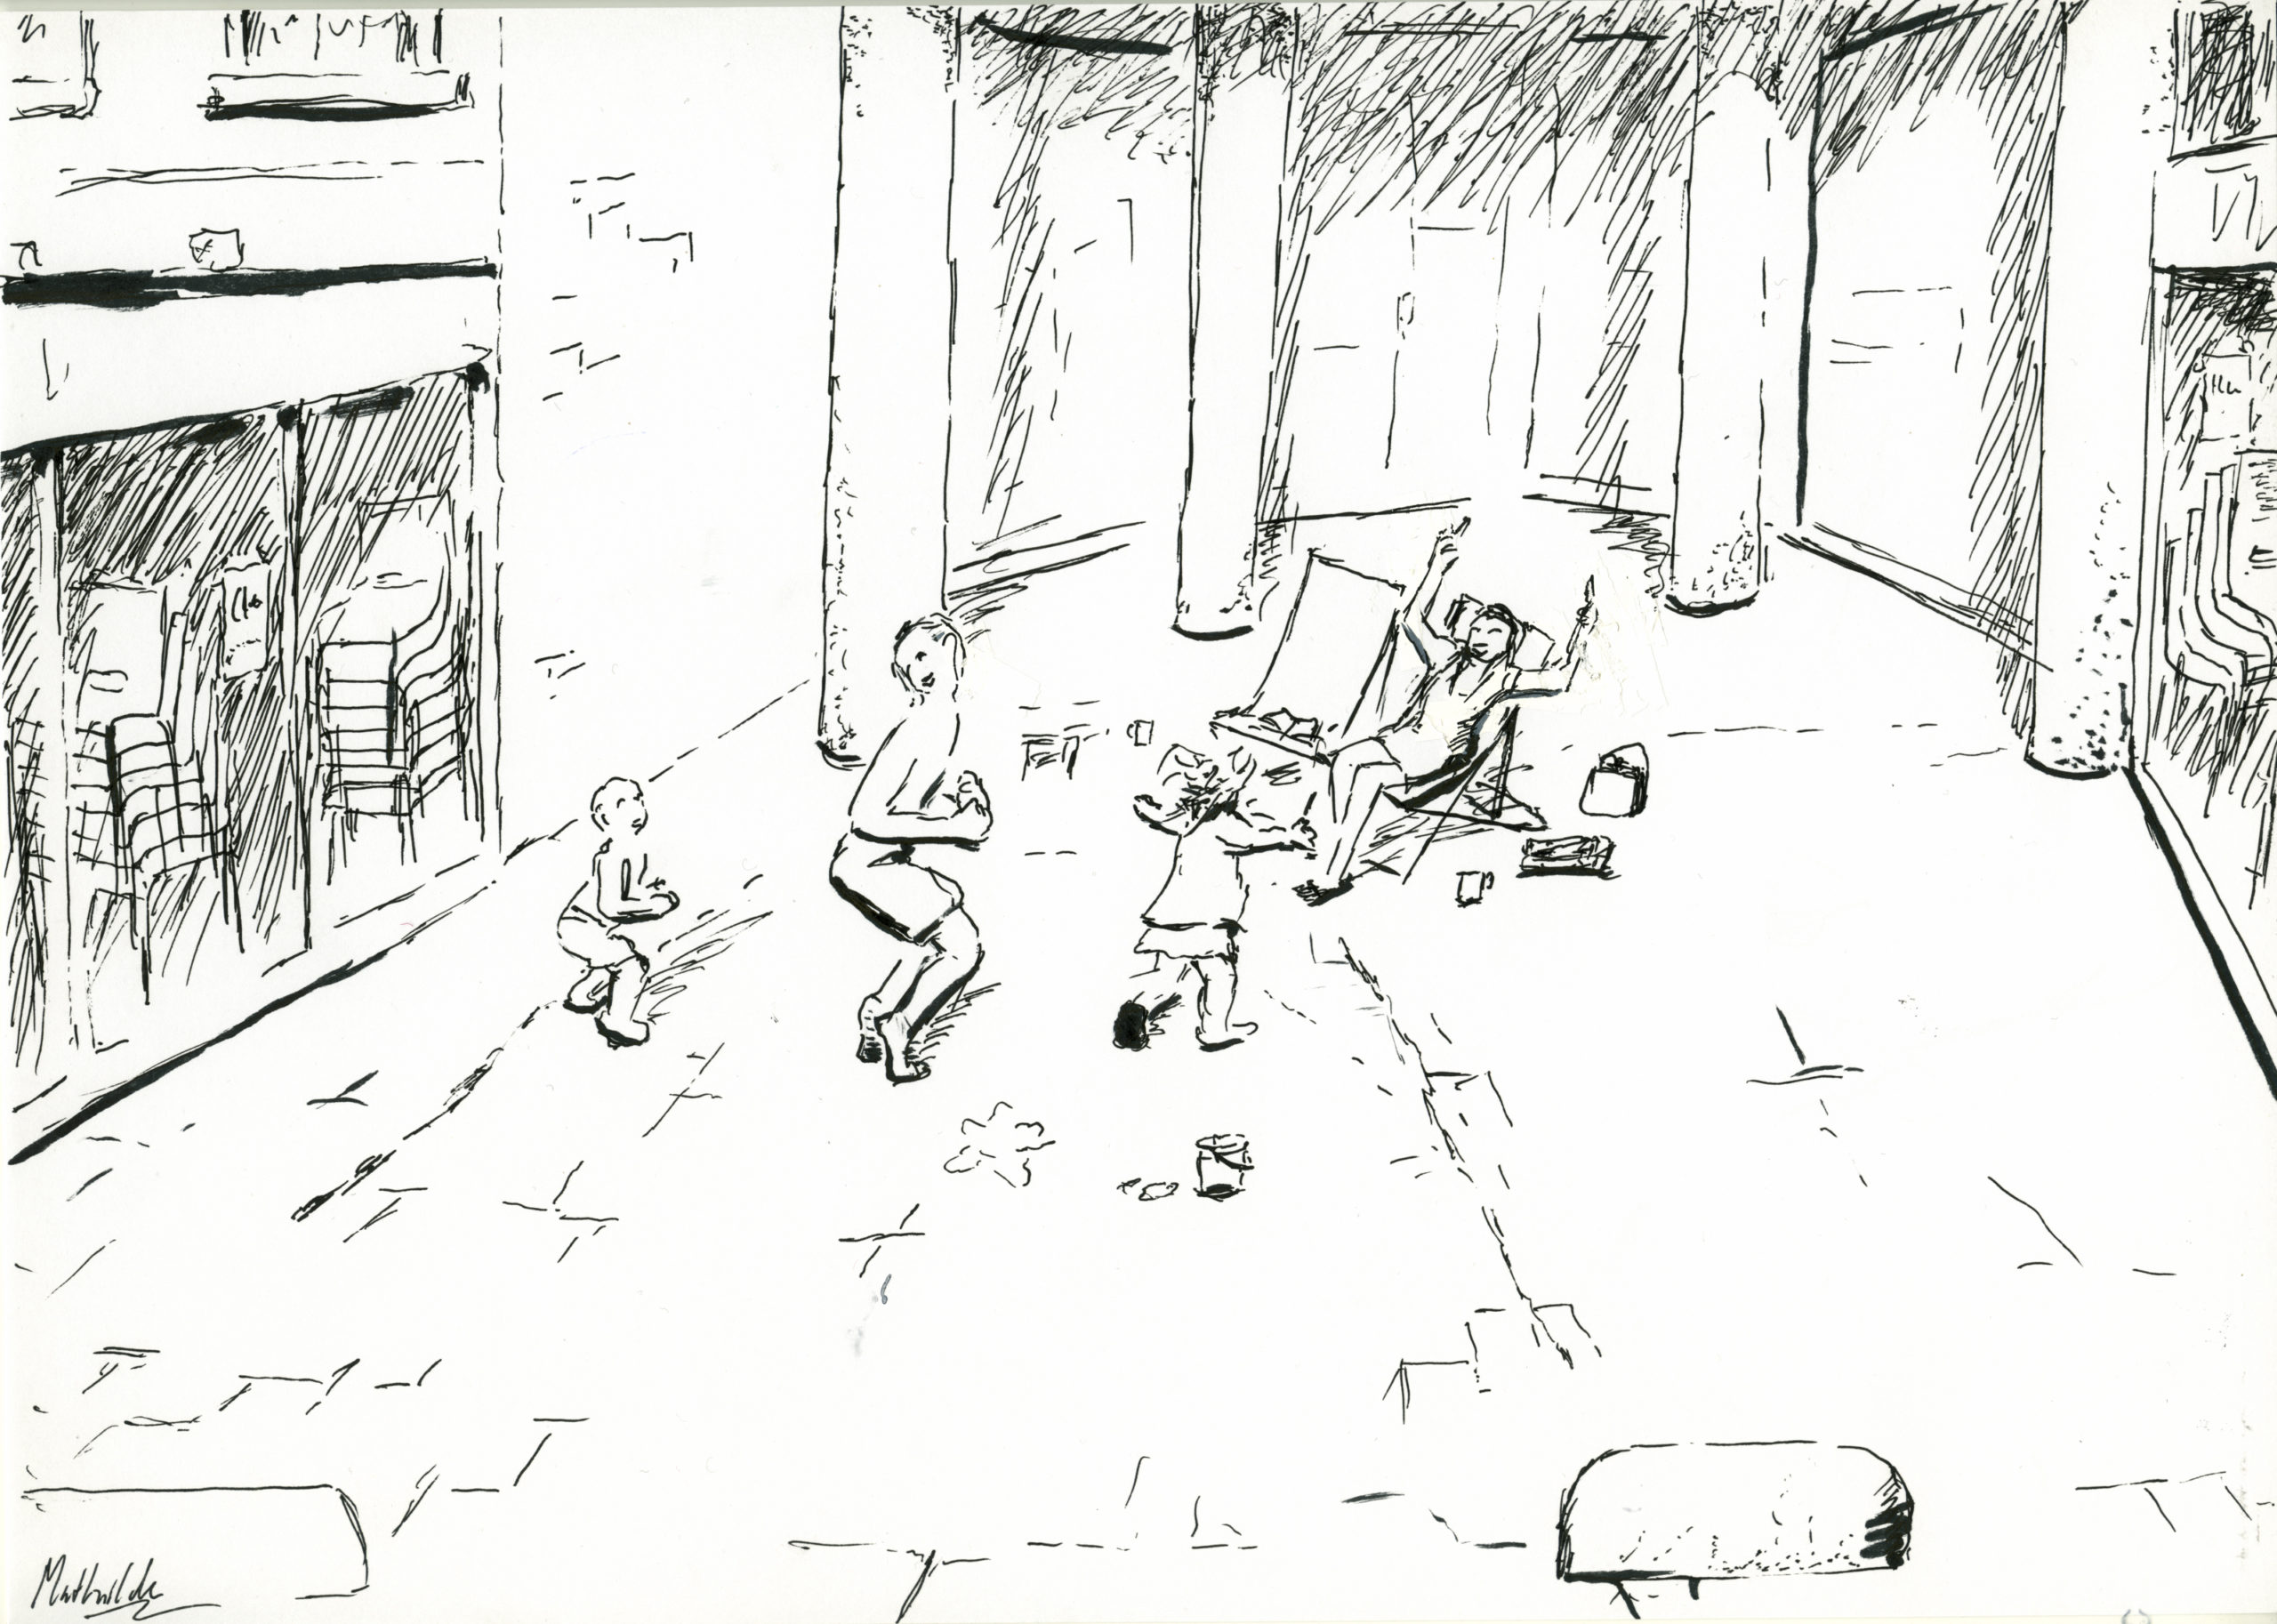 Familie speelt op het Rembrandtplein tussen gelsoten terassen, een schets door Mathilde muPe